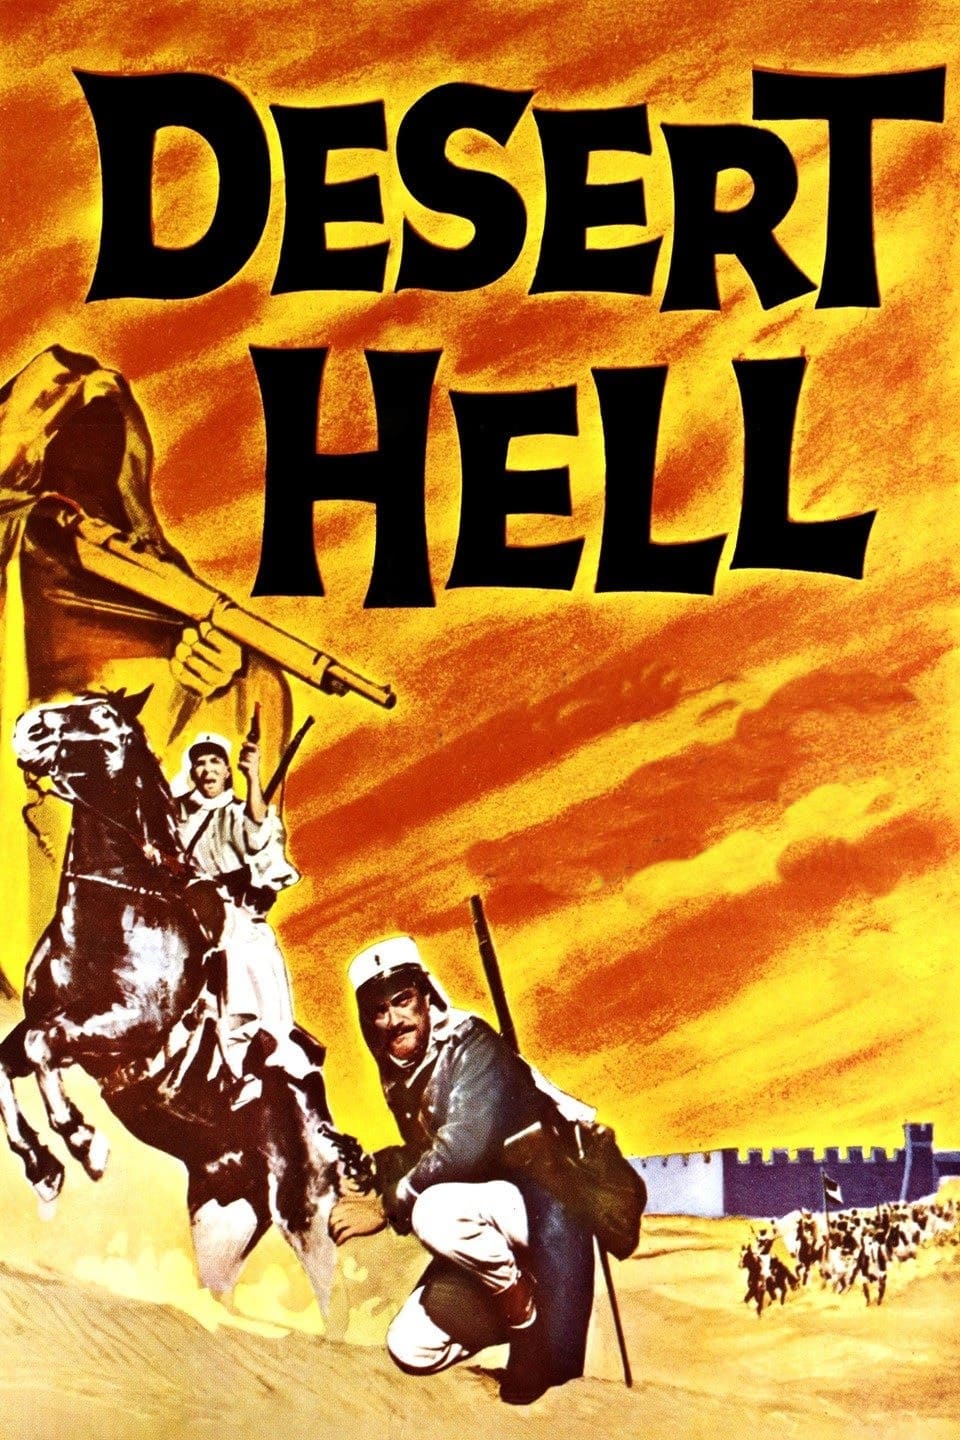 Desert Hell (1958)